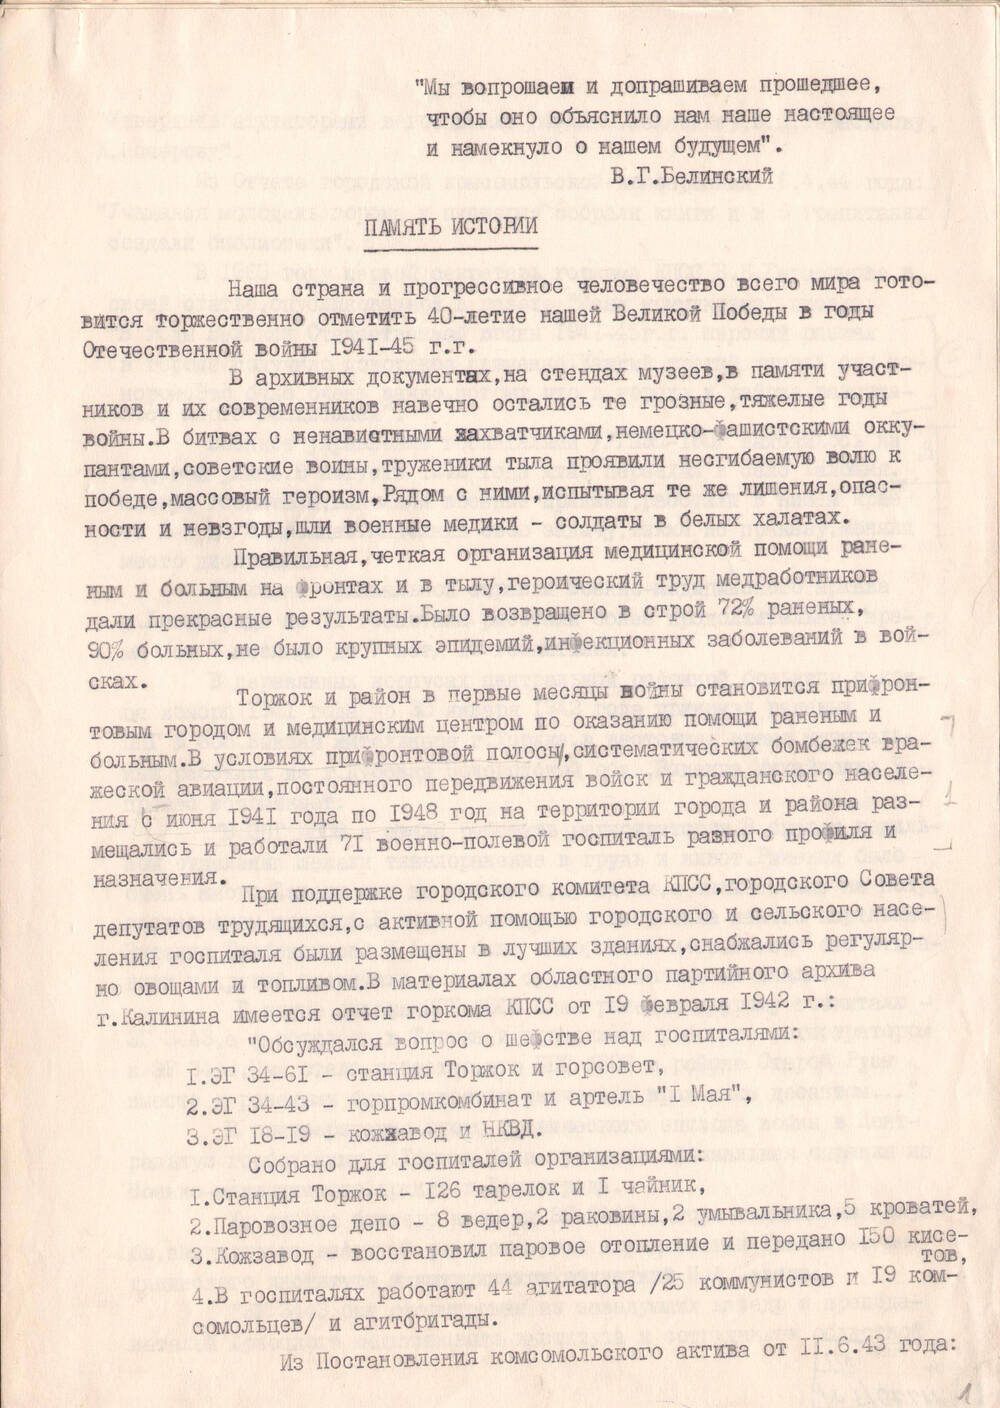 Статья Ф.Н. Новак Память истории о работе медицинских учреждений в Торжке в годы войны